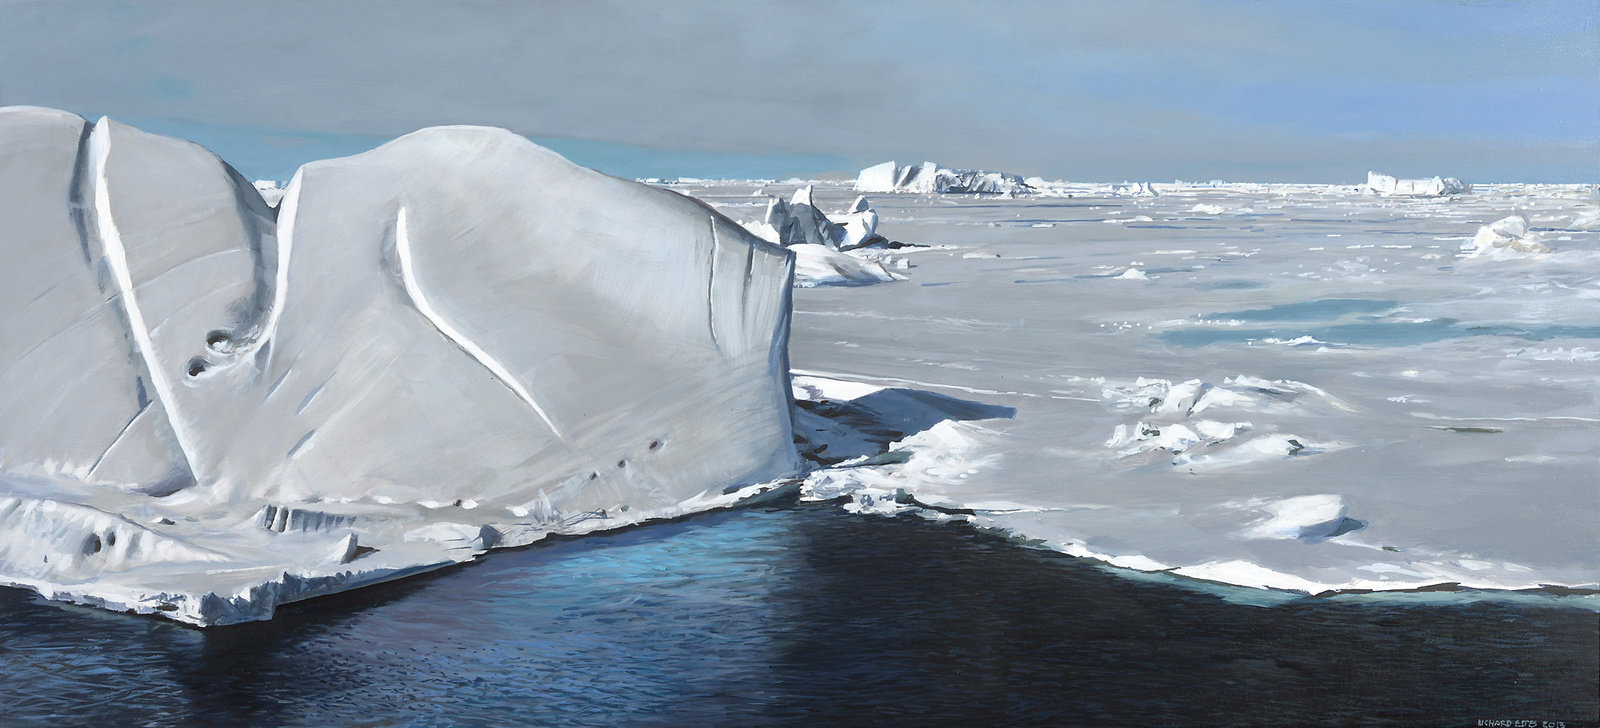 Estes, antarctica iv, 2013, oil on board, 16 x 34 3 4 in, non 53894